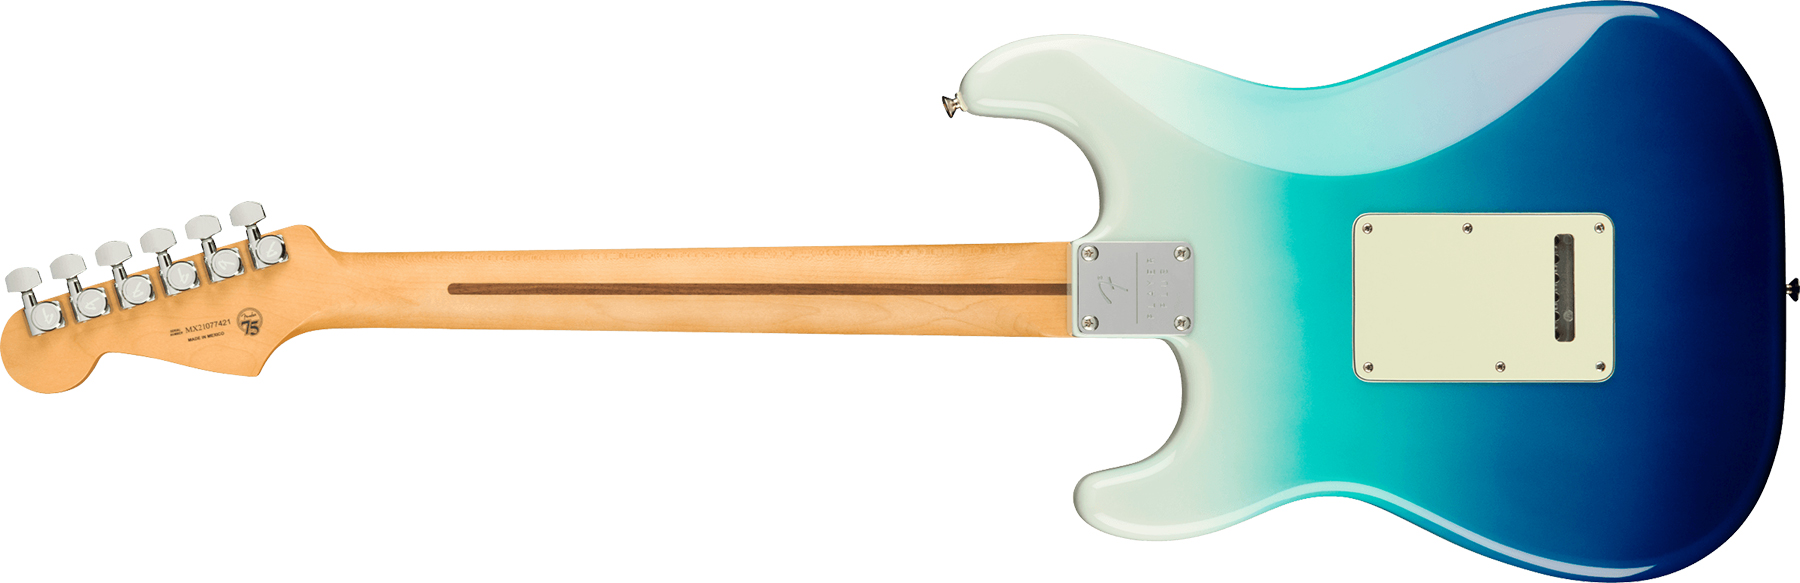 Fender Strat Player Plus Mex Hss Trem Pf - Belair Blue - Elektrische gitaar in Str-vorm - Variation 1